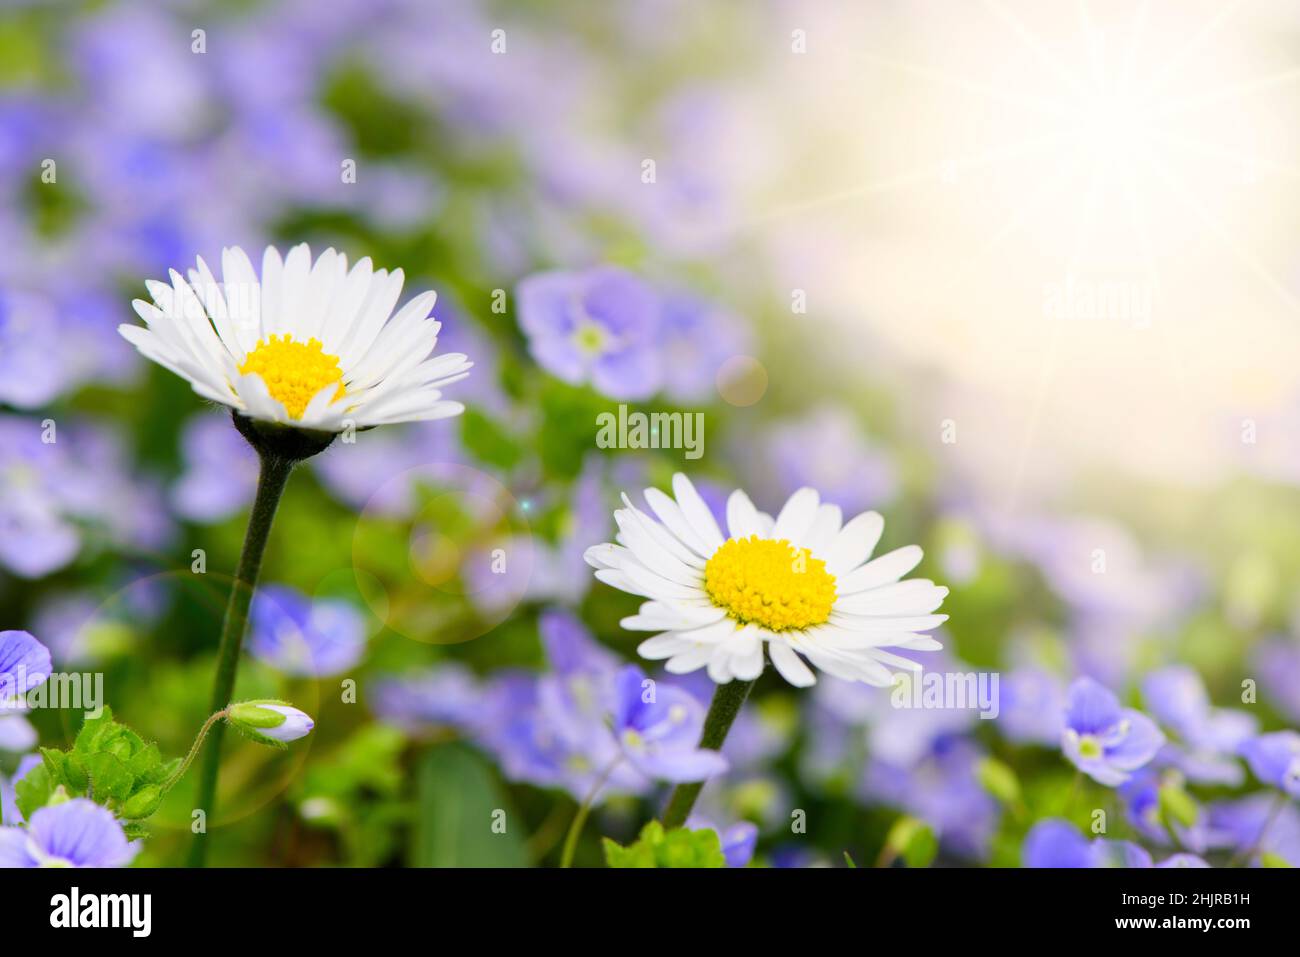 panoramic scene with daisies flowers and sunbeam Stock Photo